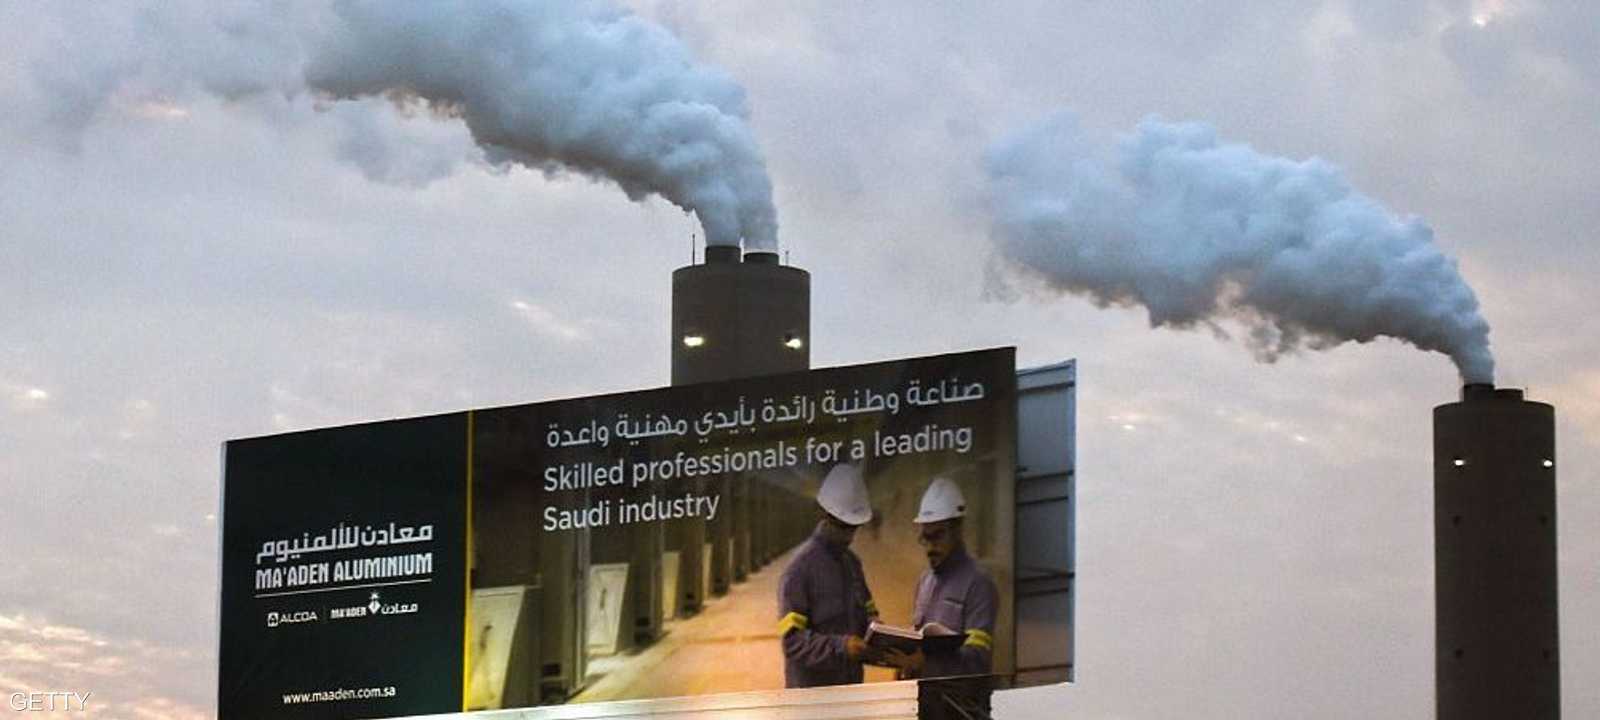 مصنع جديد لـ"معادن" يرفع الأسهم السعودية